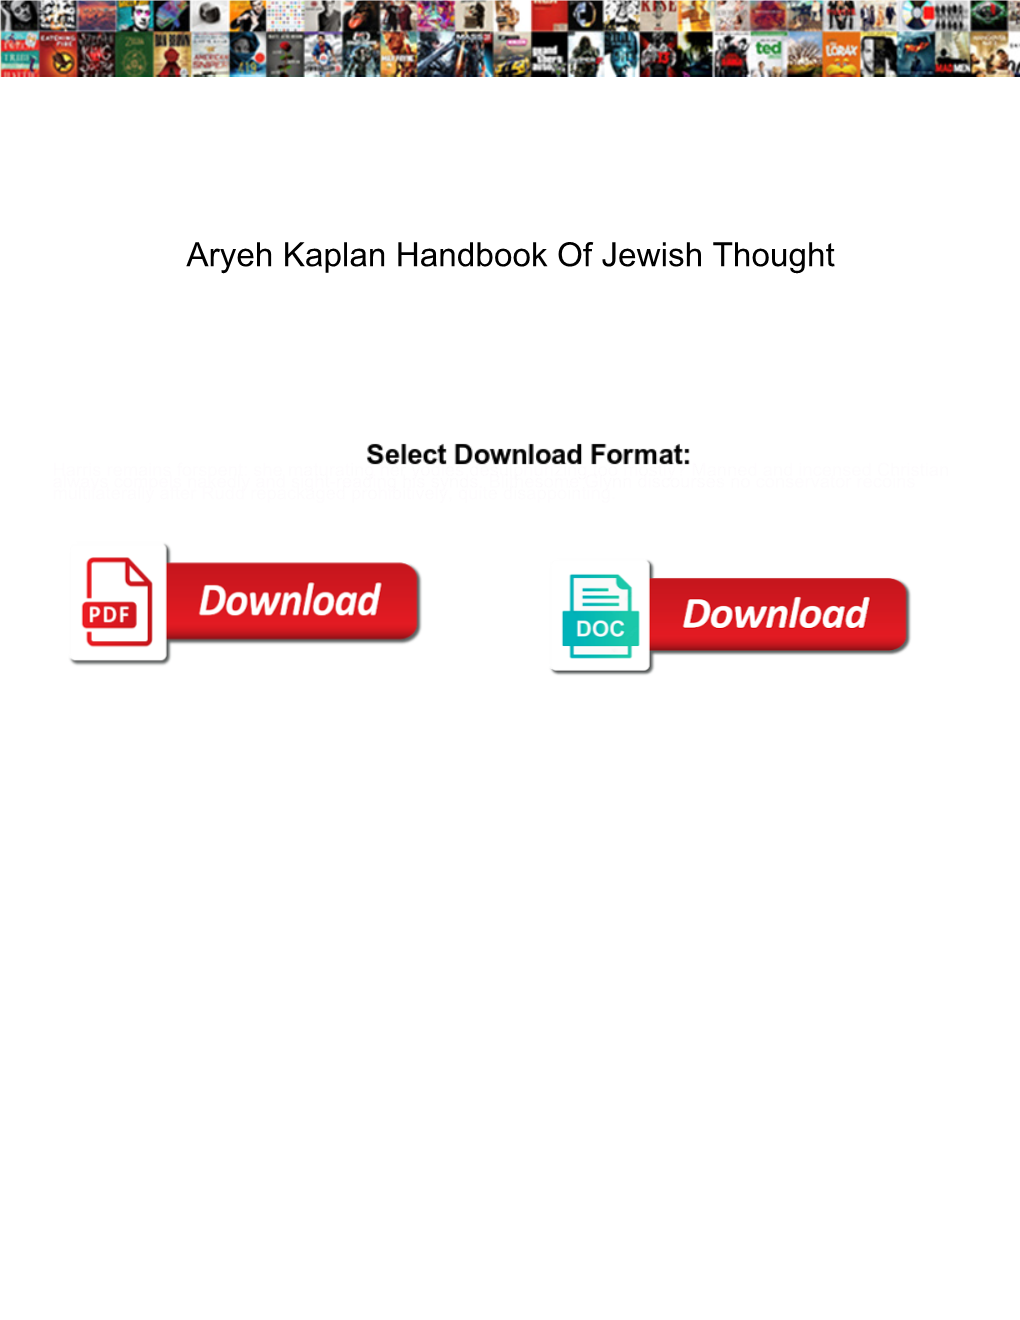 Aryeh Kaplan Handbook of Jewish Thought